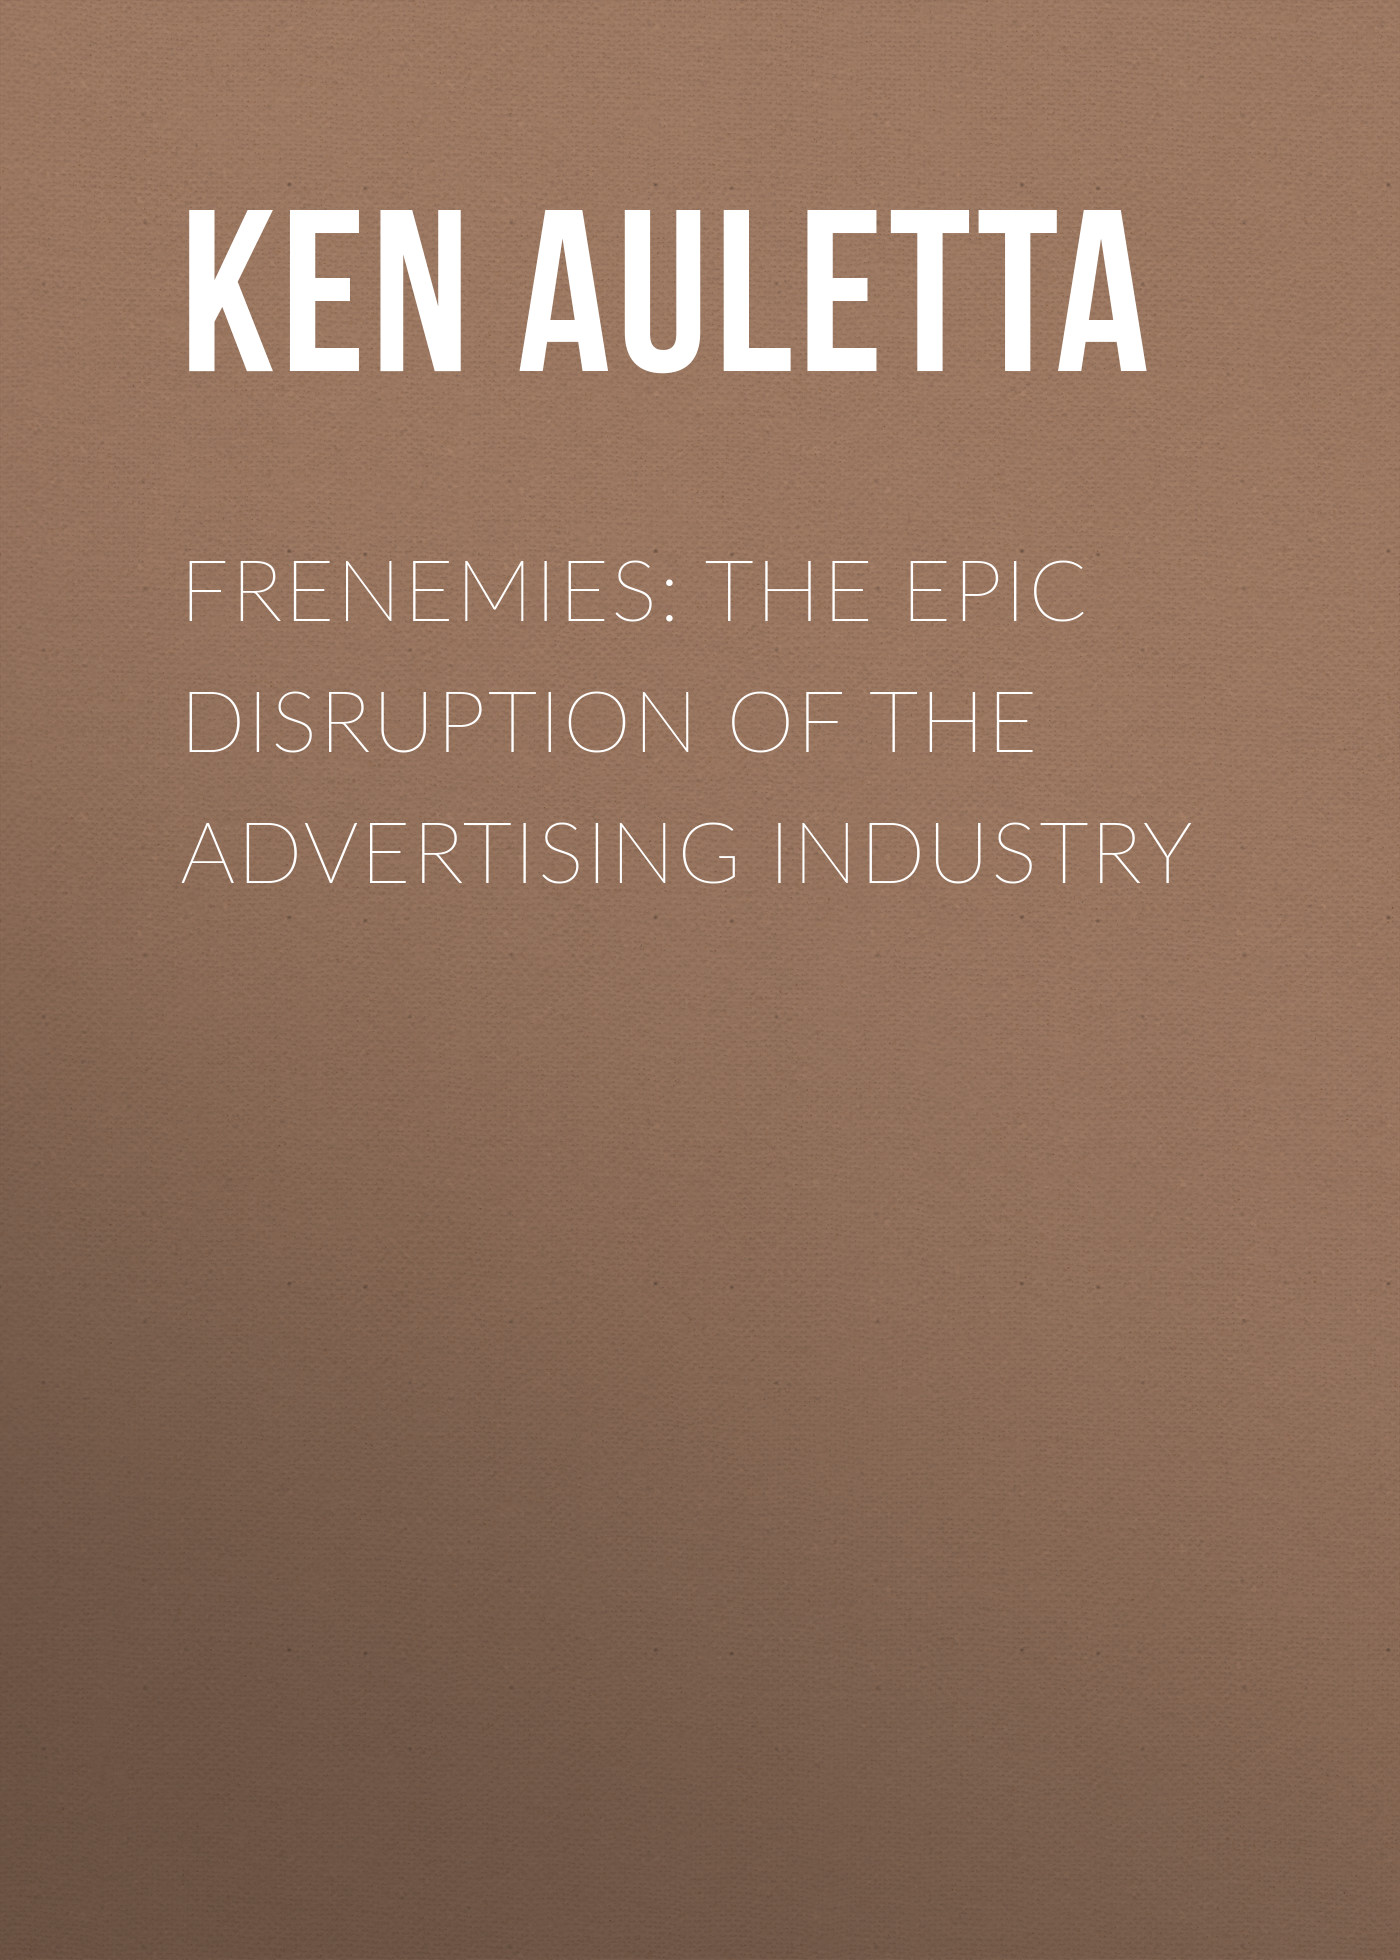 Книга  Frenemies: The Epic Disruption of the Advertising Industry созданная Ken  Auletta может относится к жанру зарубежная деловая литература, реклама, управление бизнесом. Стоимость электронной книги Frenemies: The Epic Disruption of the Advertising Industry с идентификатором 42415126 составляет 1315.38 руб.